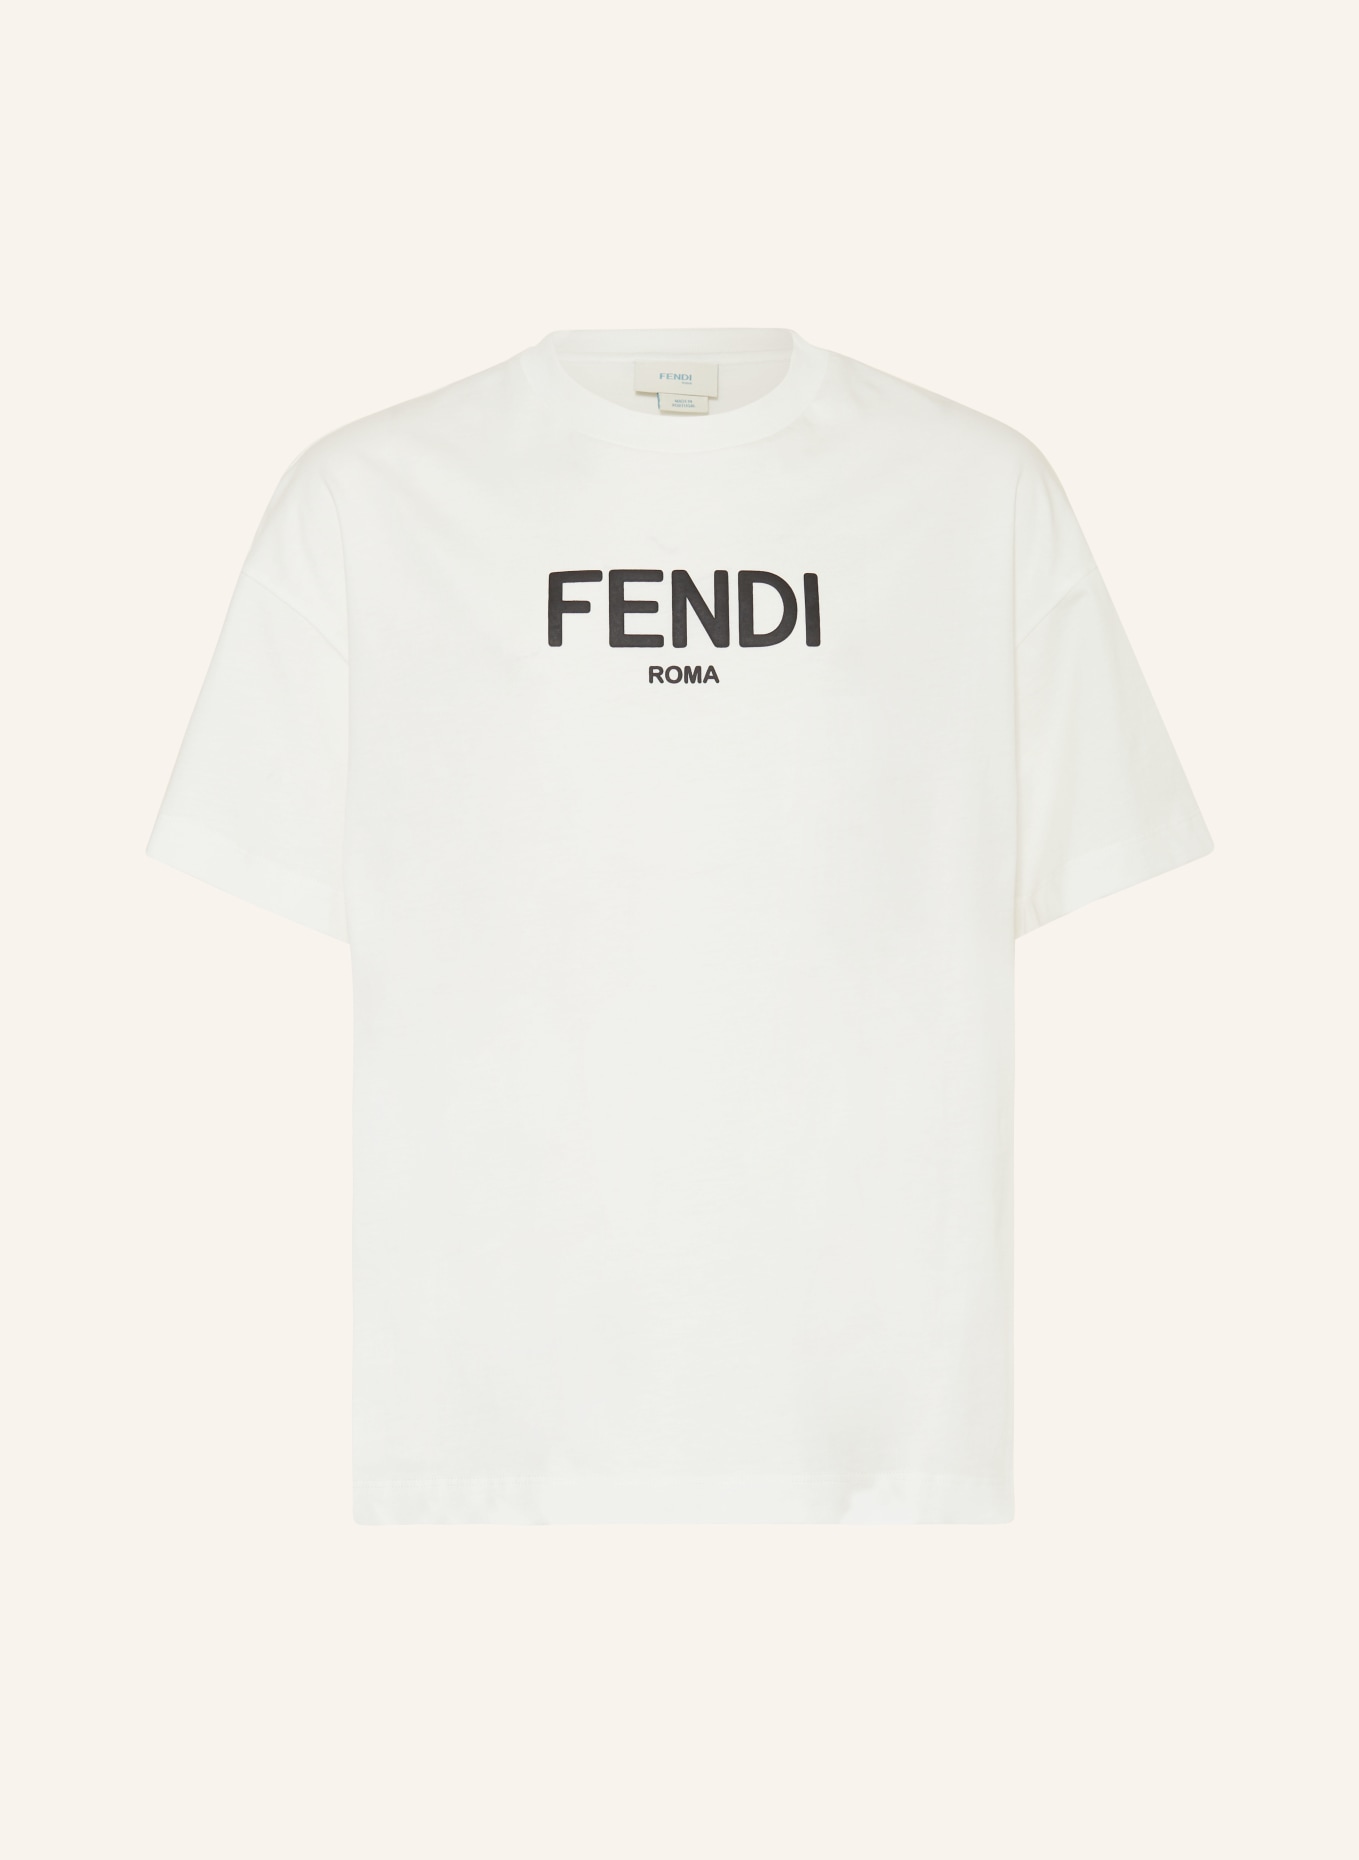 FENDI T-Shirt, Farbe: WEISS/ SCHWARZ (Bild 1)